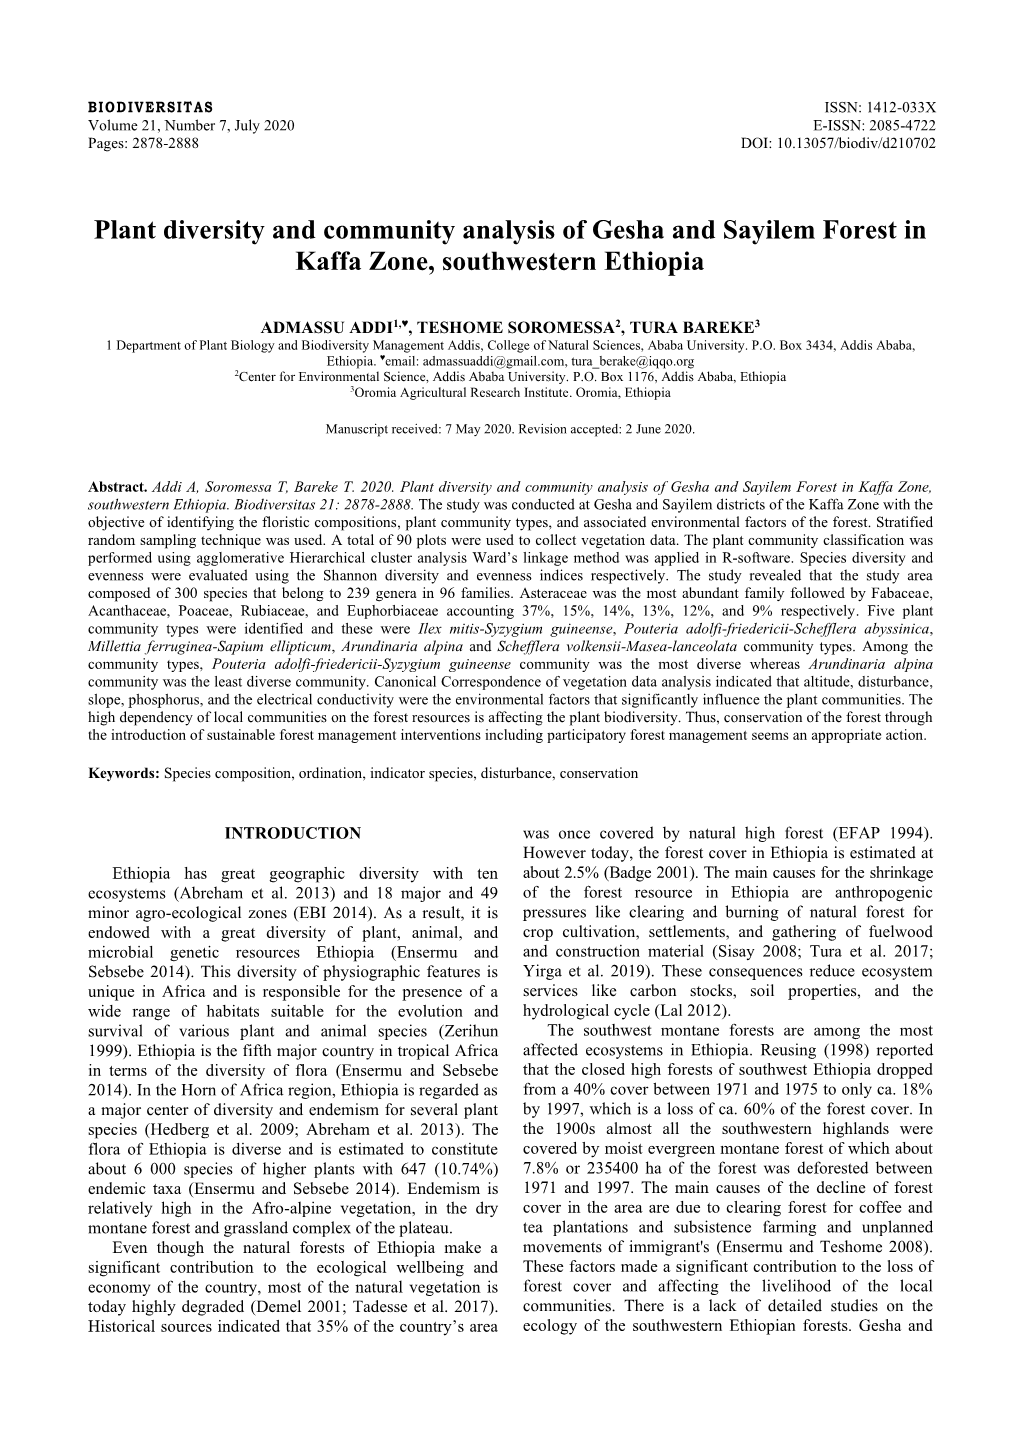 Plant Diversity and Community Analysis of Gesha and Sayilem Forest in Kaffa Zone, Southwestern Ethiopia